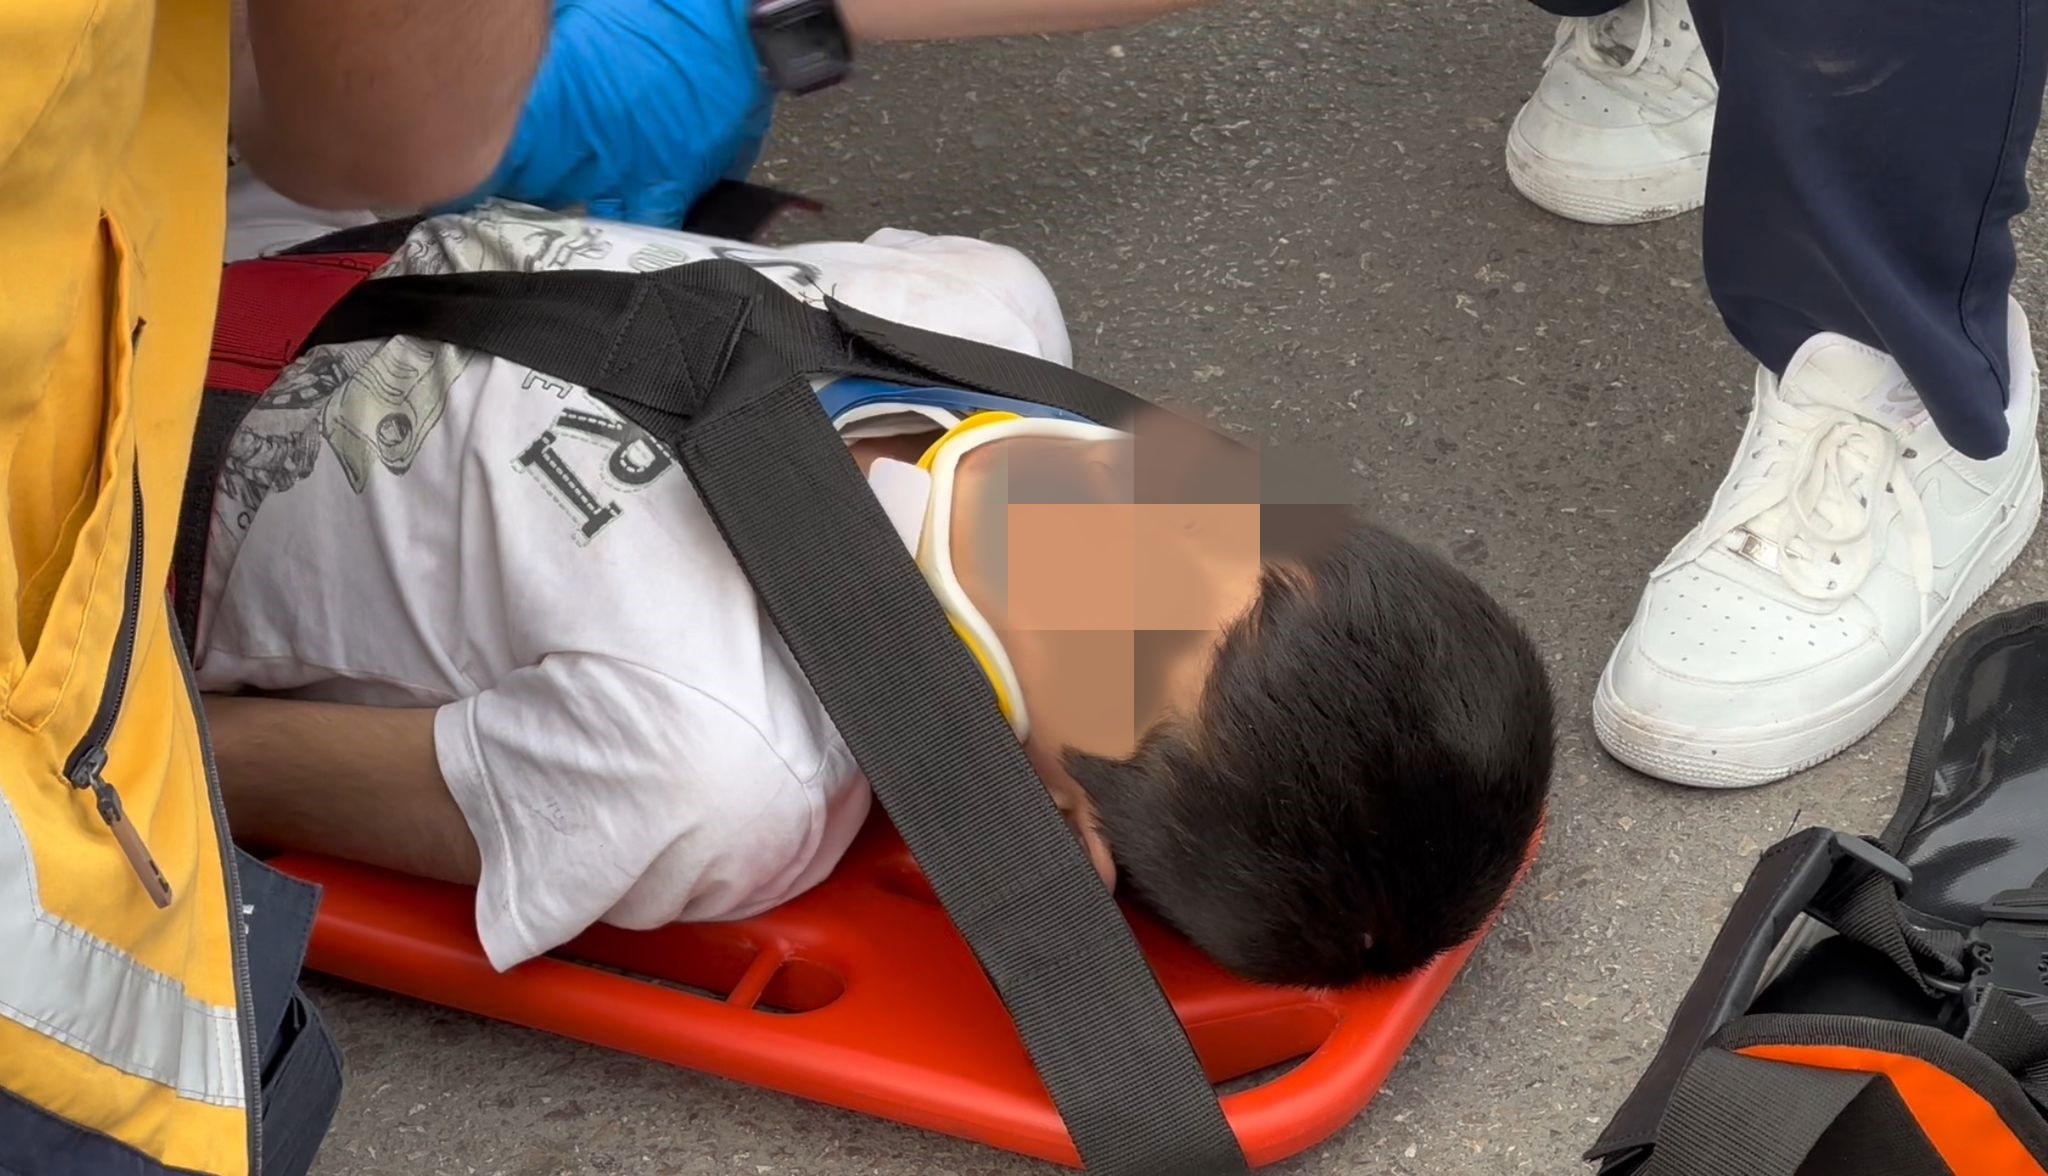 Motokuryenin çarptığı 9 yaşındaki çocuk yaralandı-3